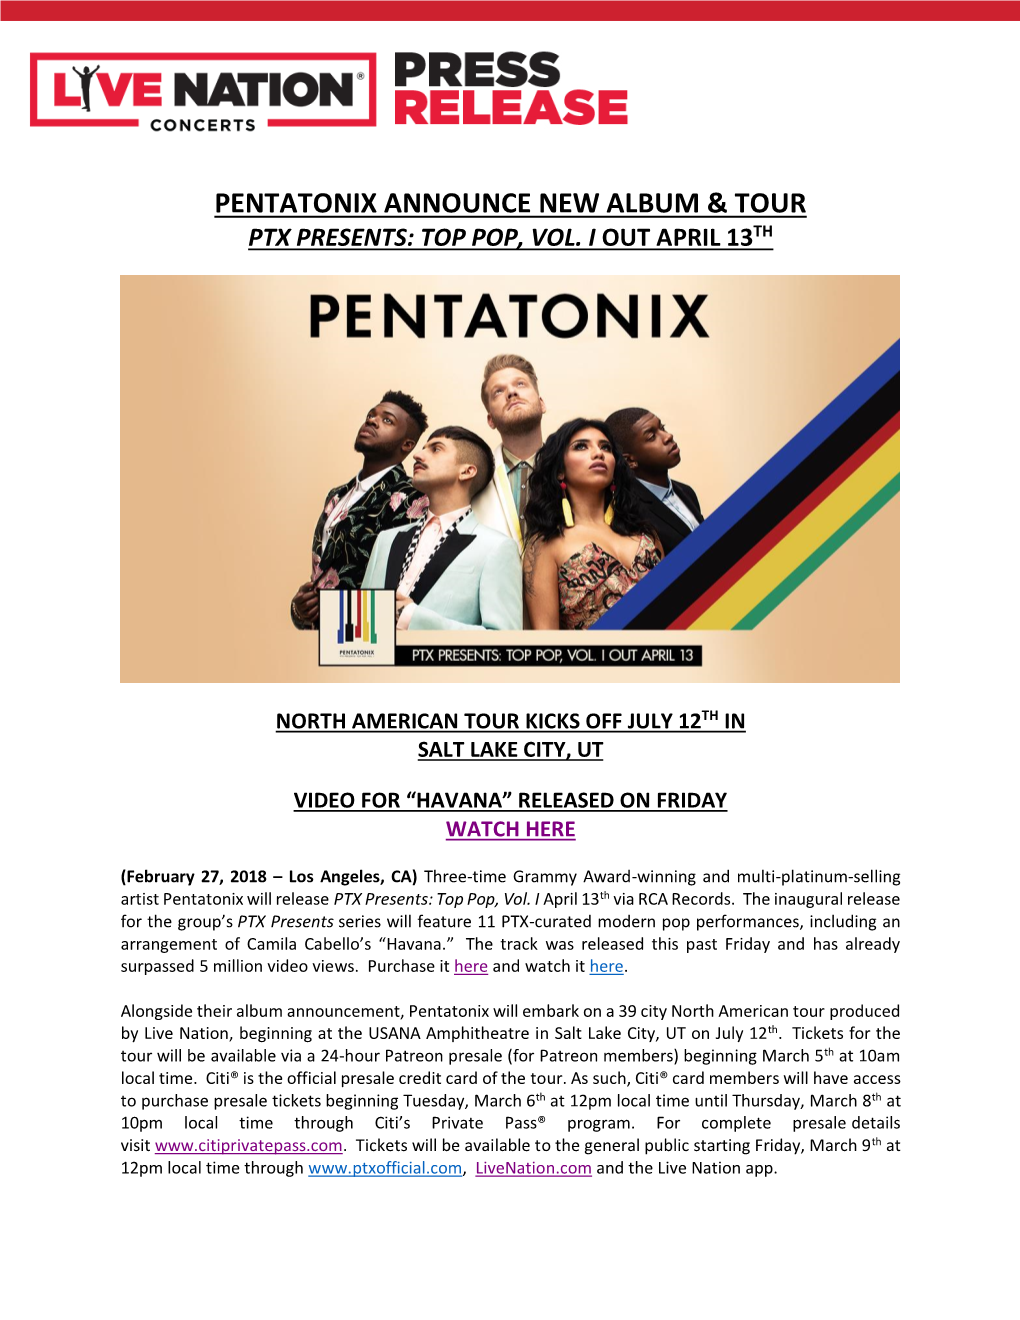 Pentatonix Announce New Album & Tour